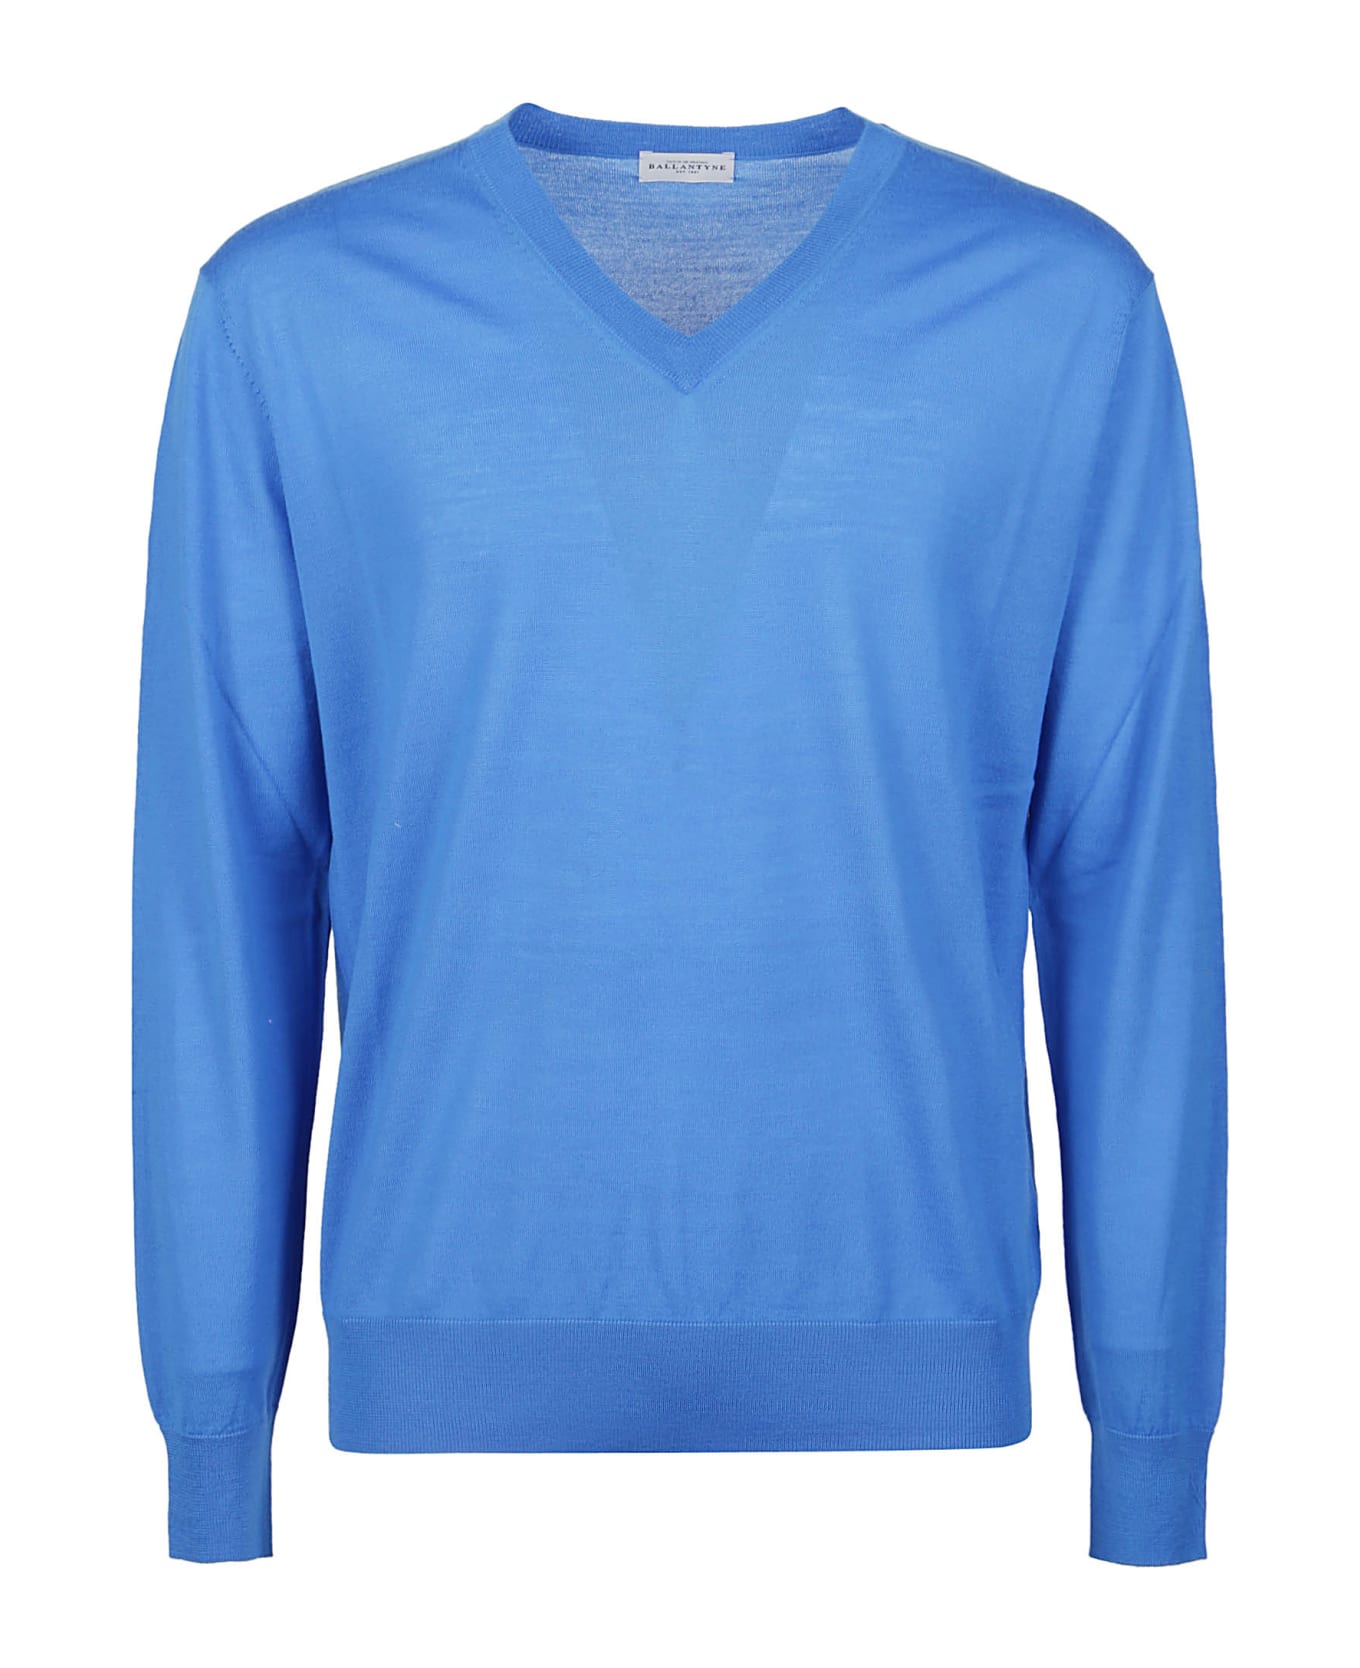 Ballantyne Plain Sweater - Cobalto ニットウェア